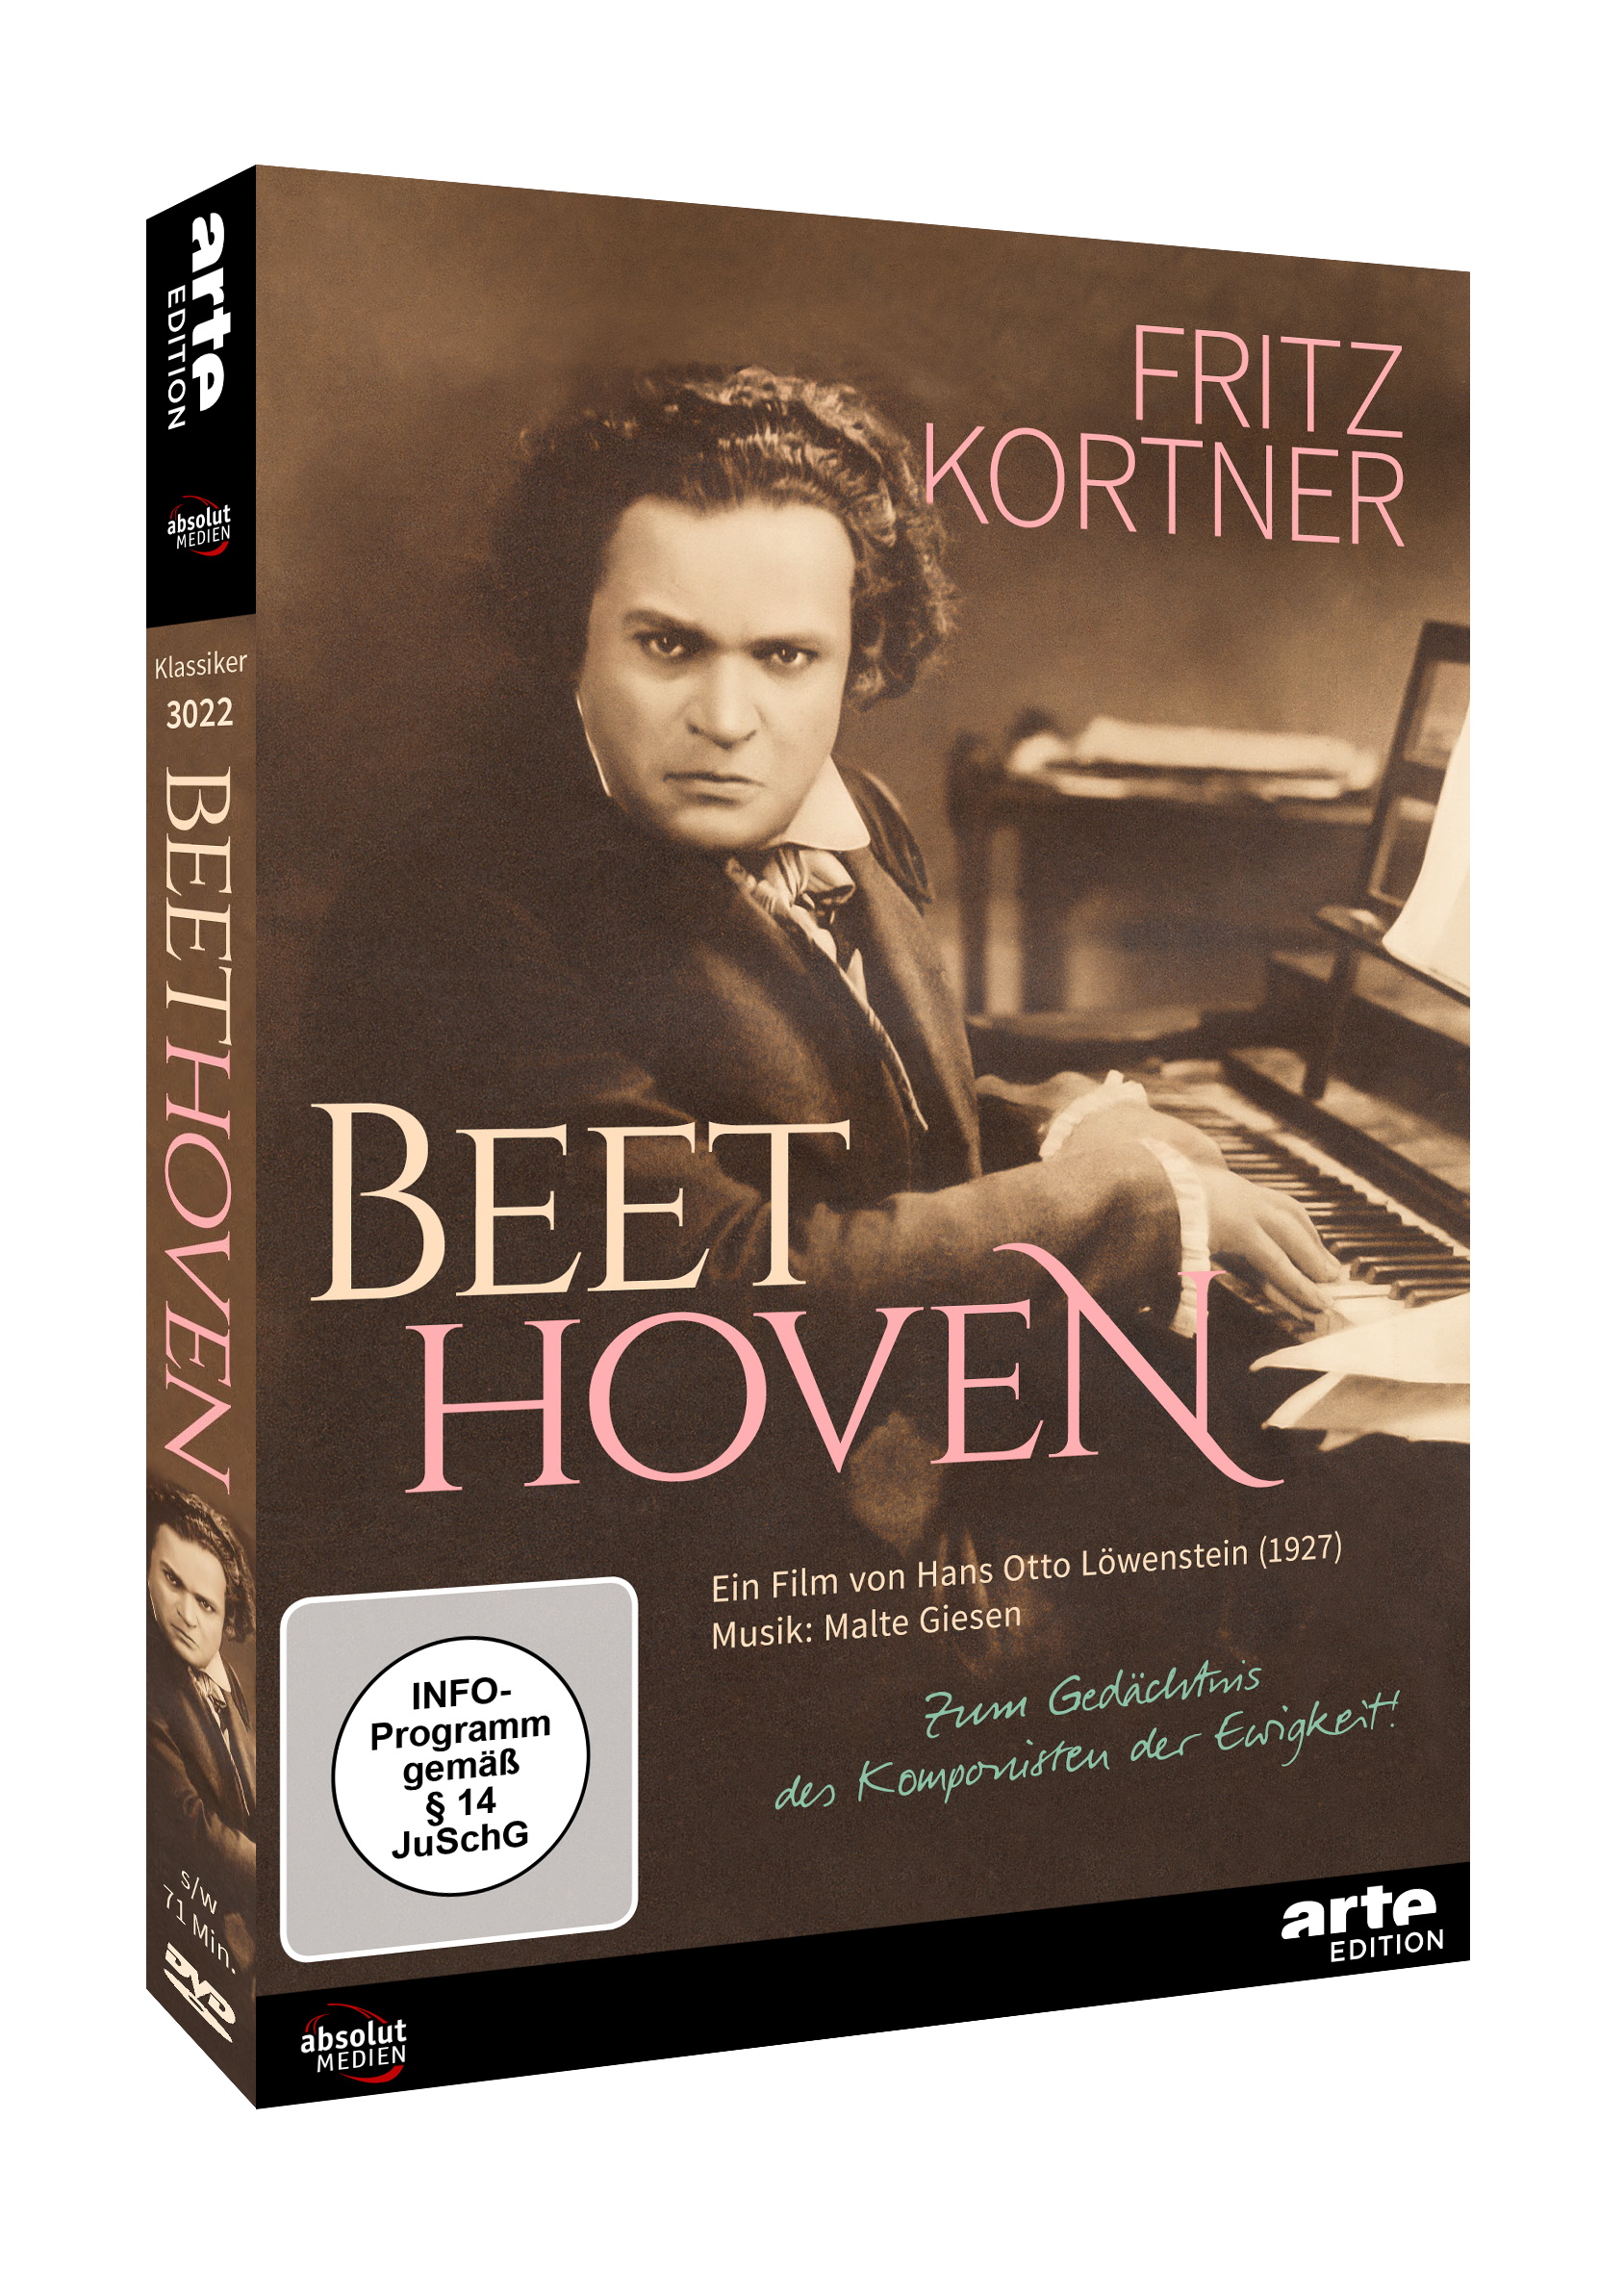 Beethoven (1927)